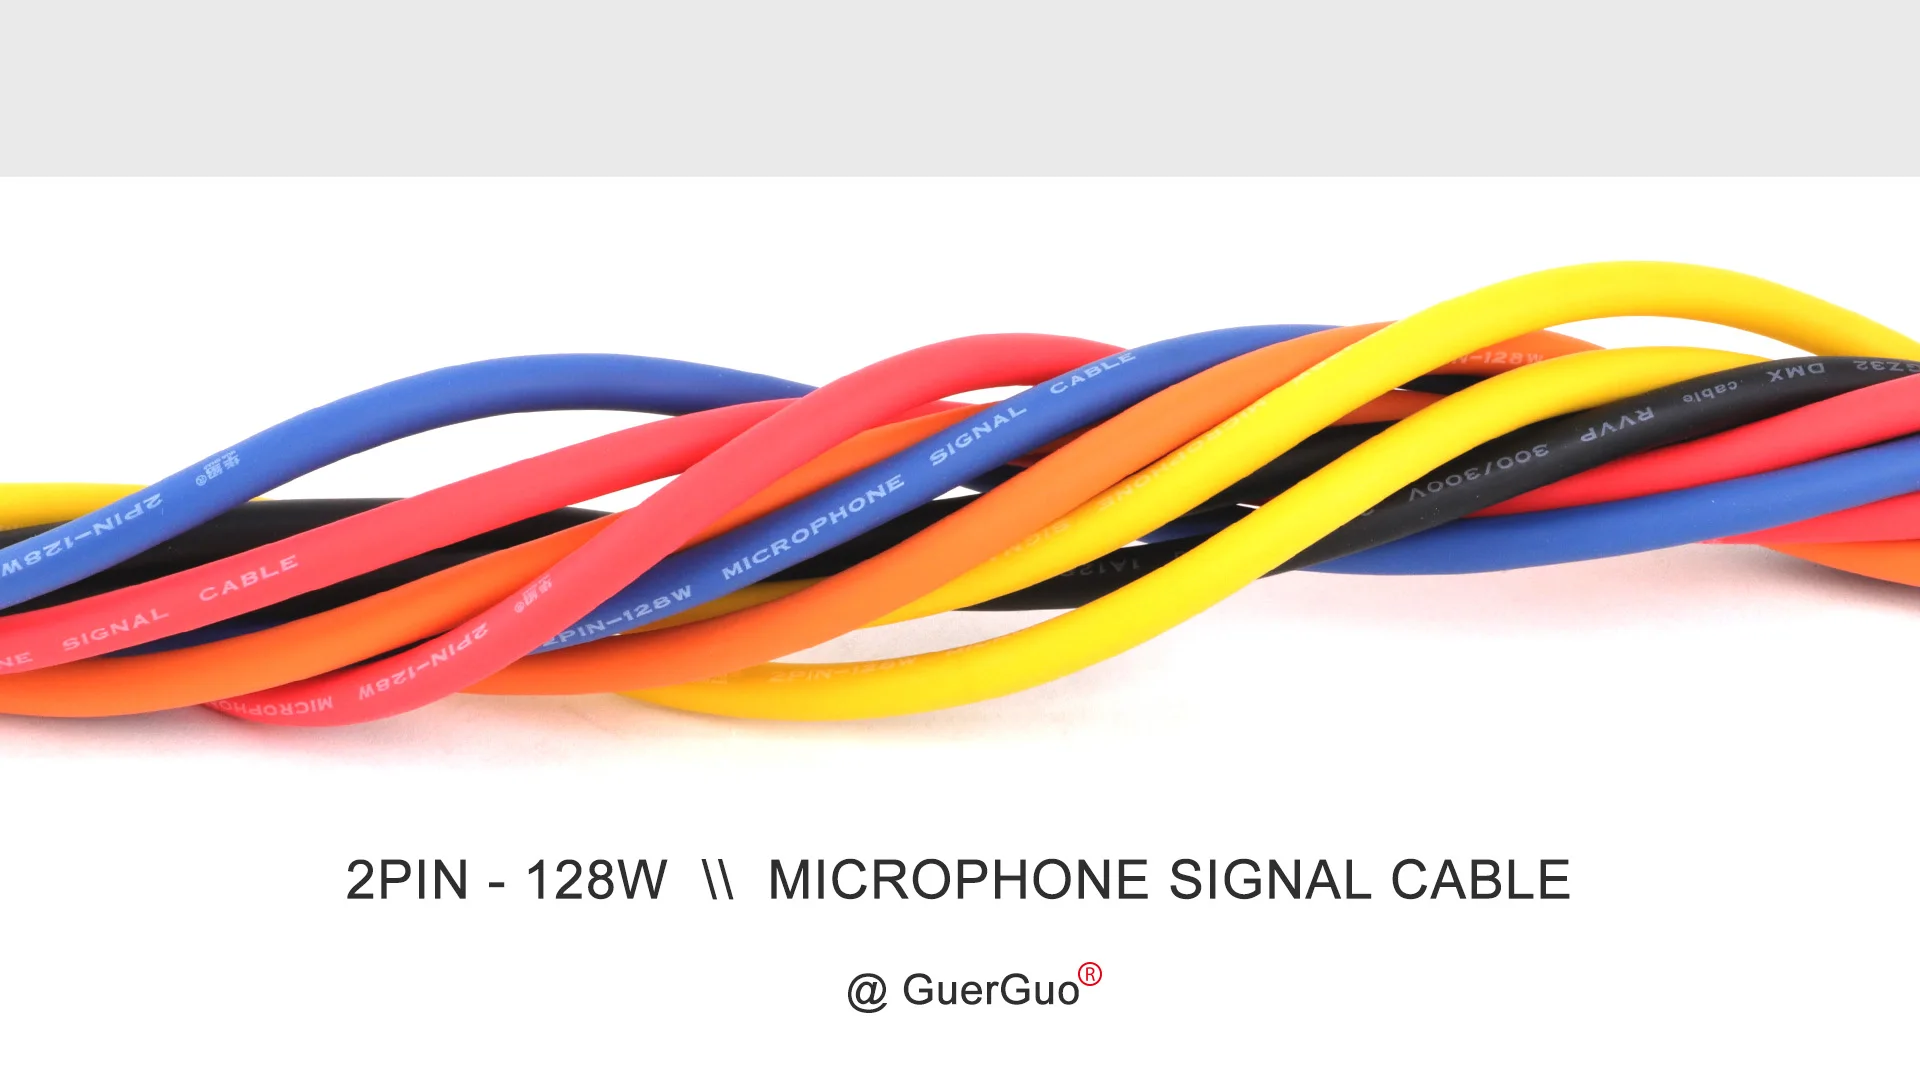 Sc7f28239f3c54233b2309511ea618afdt 1PC 3Pin XLR Cable Male to Female Plastic Plug OFC Copper Shielded For Mixer Microphone Amplifier 0.3m 1m 2m 3m 5m 8m 10m 15m